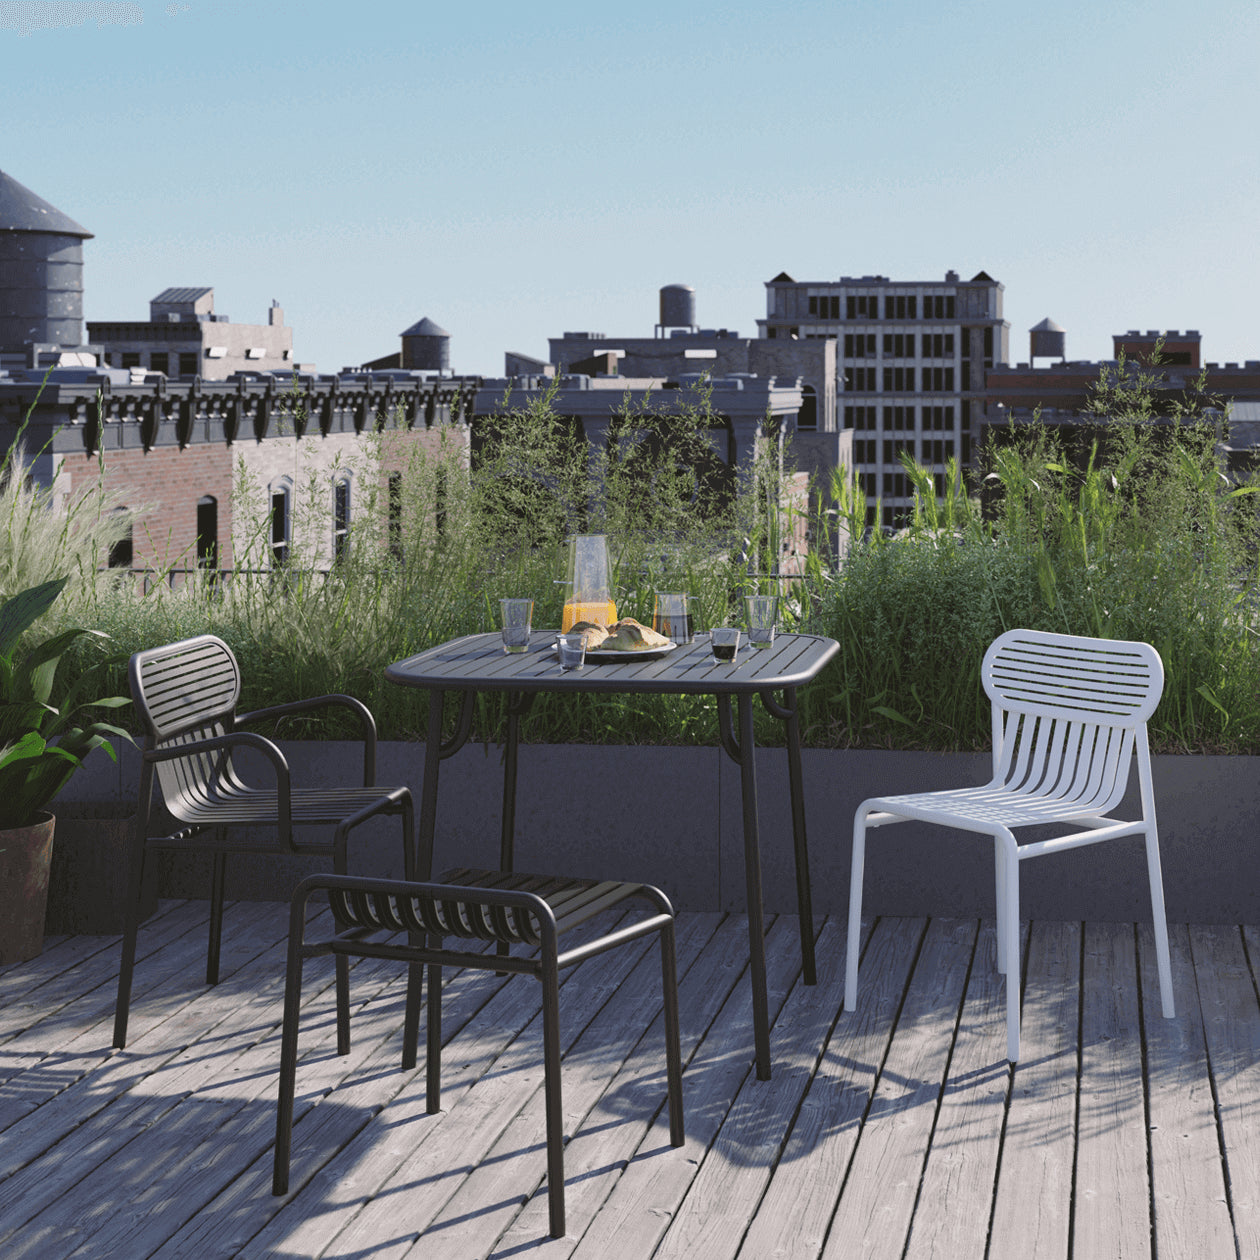 Week-End Gartenstuhl in Black präsentiert im Onlineshop von KAQTU Design AG. Gartenstuhl ist von Petite Friture